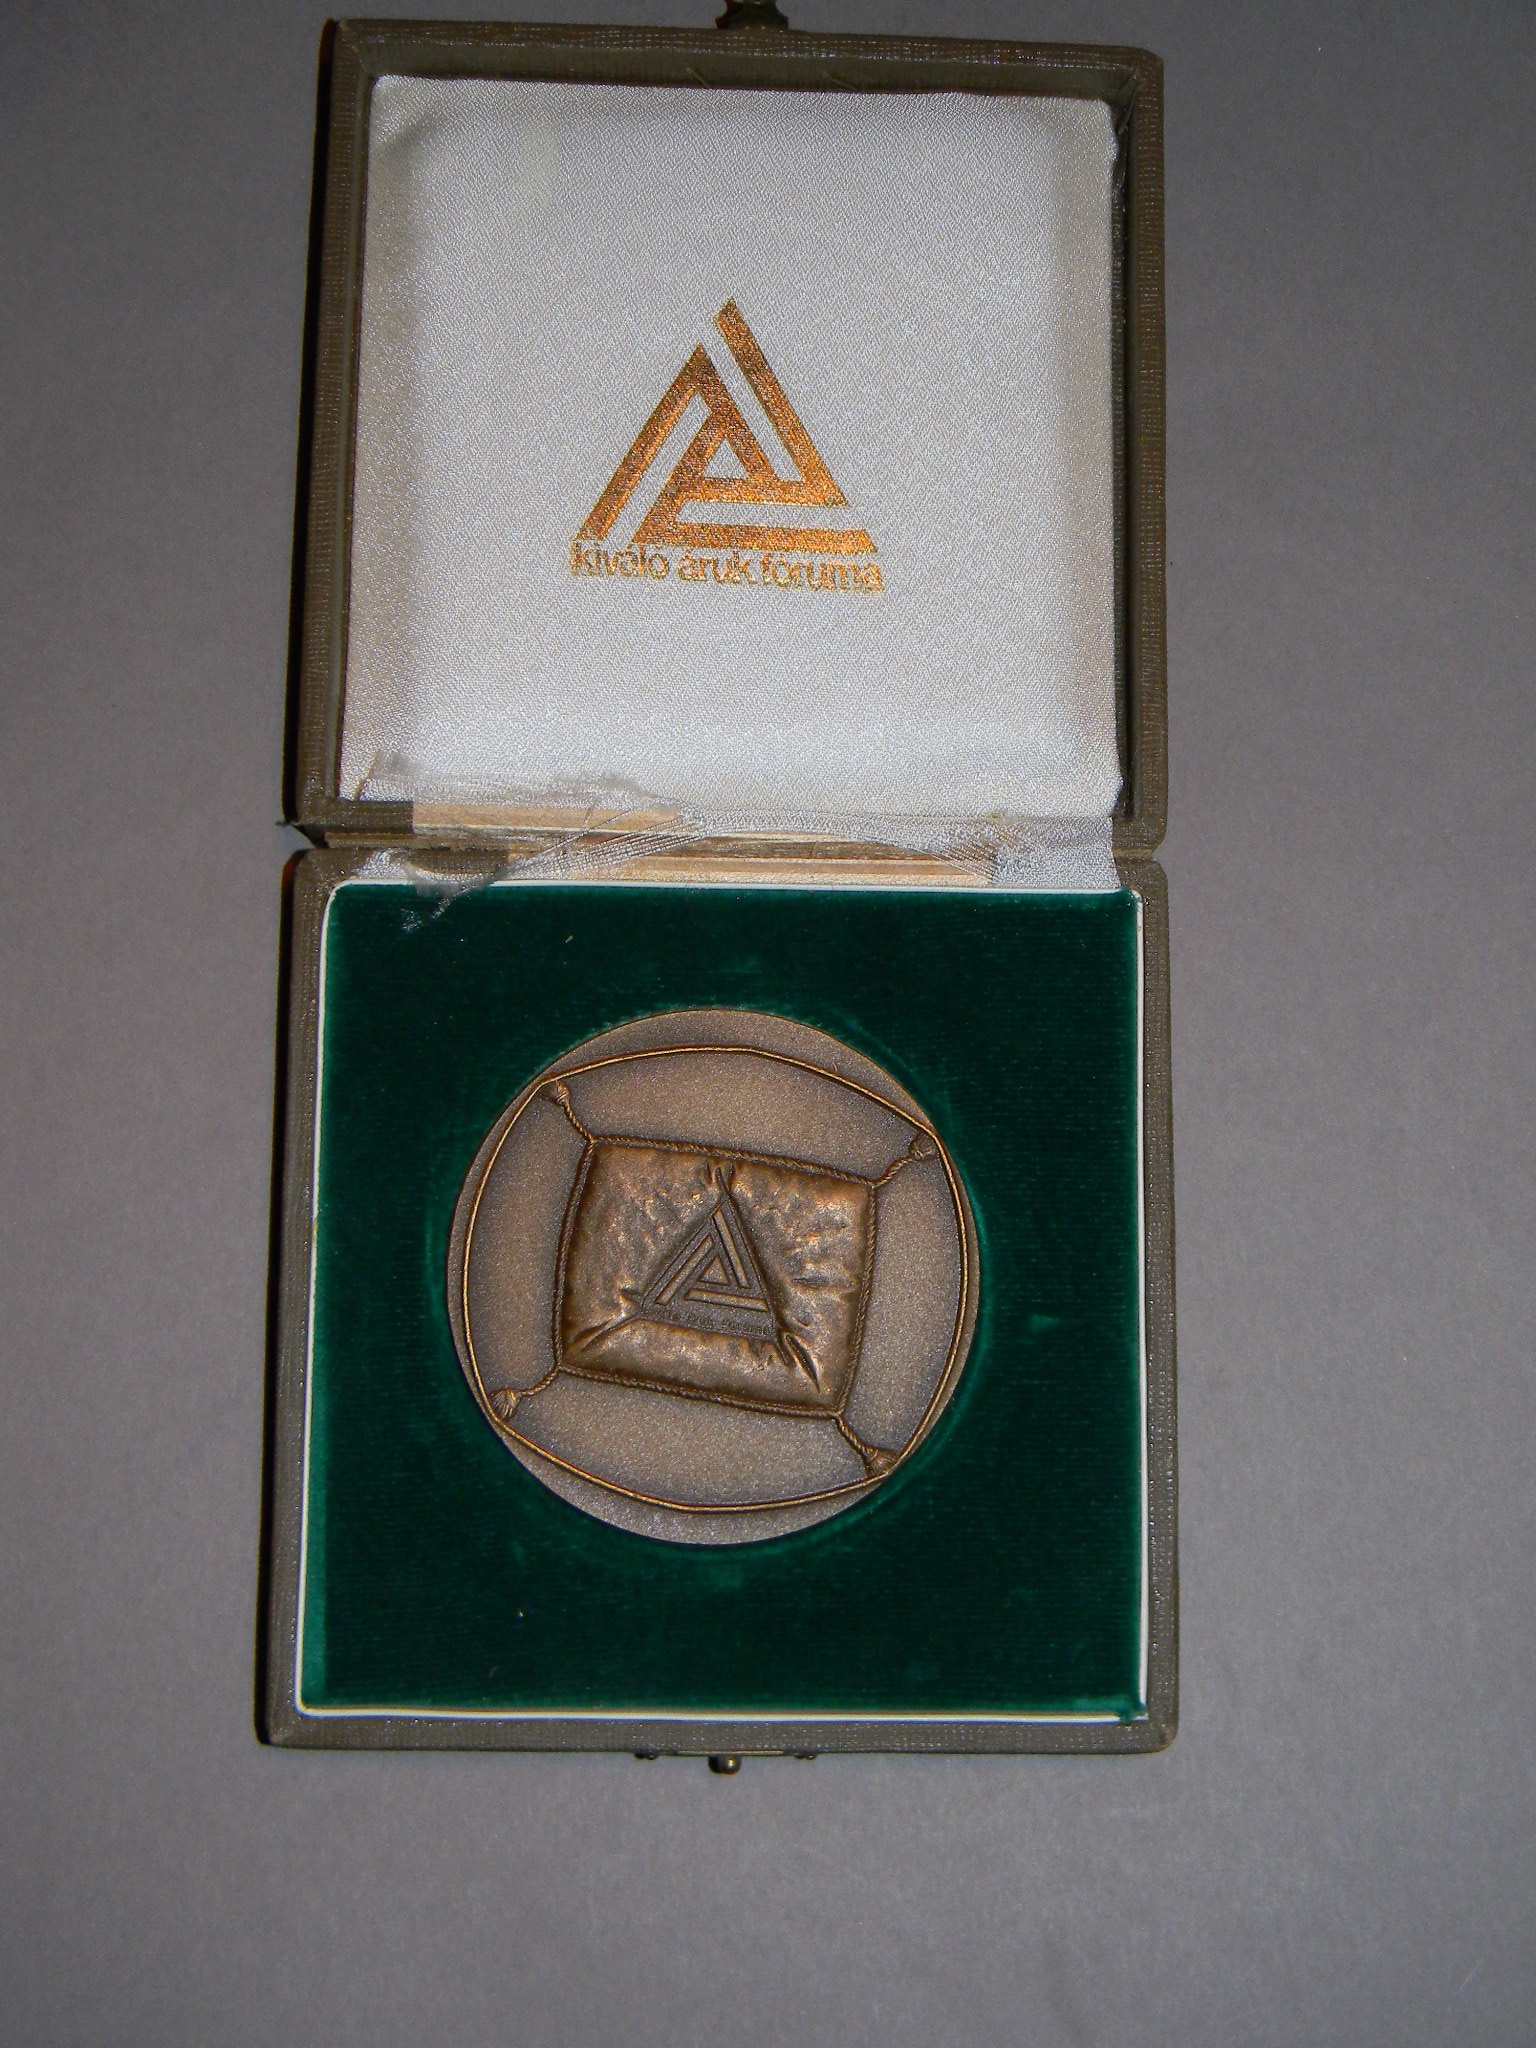 Kiváló Áruk Fóruma Verseny jutalomérme, 1980-as évek (Magyar Kereskedelmi és Vendéglátóipari Múzeum CC BY-NC-SA)